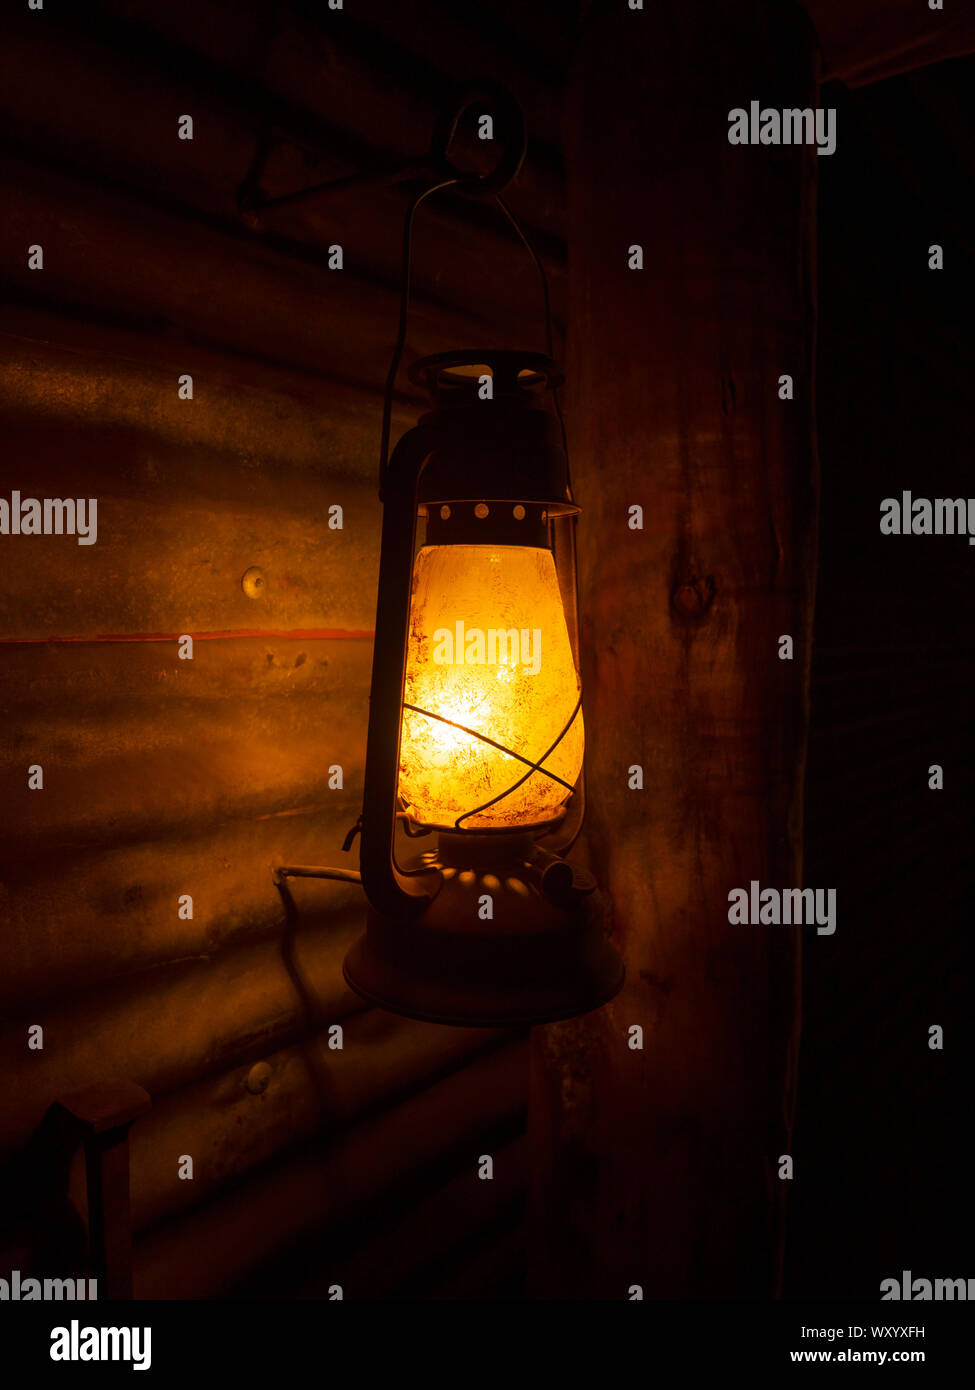 Old retro kerosene lantern with a corrugated iron wall background and dark background Stock Photo